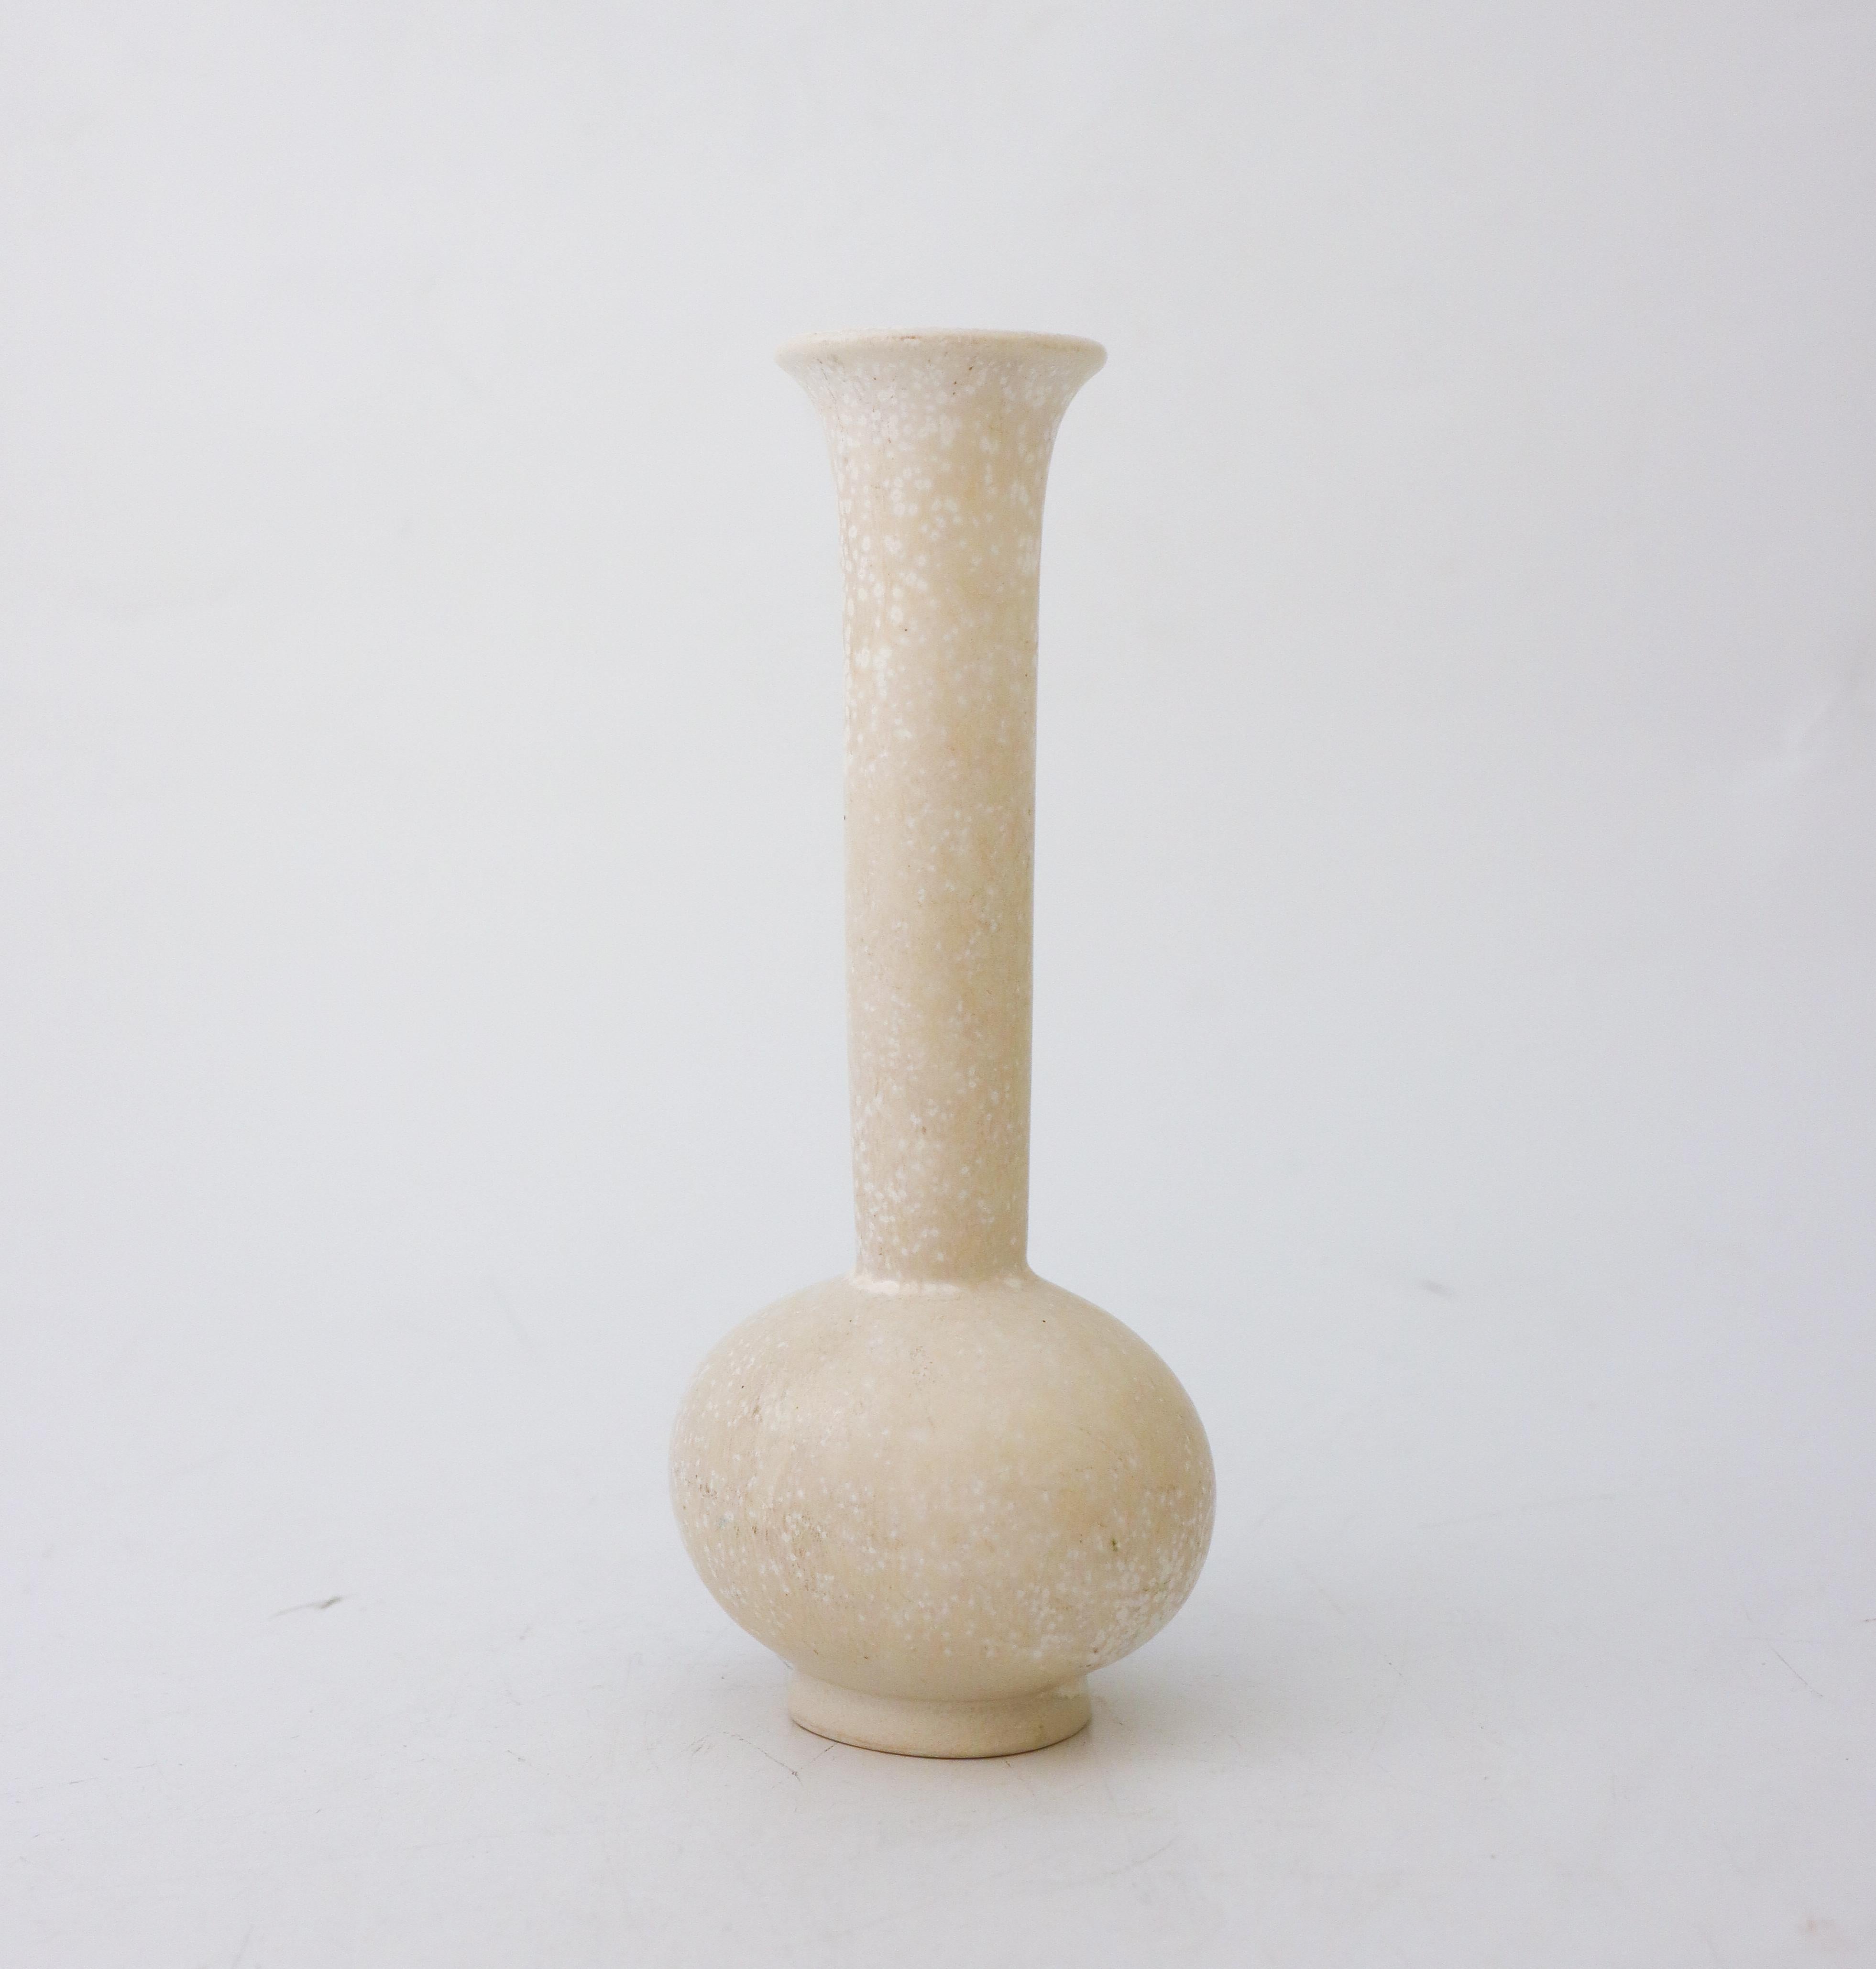 Die hübsche weiß gesprenkelte Vase wurde von Gunnar Nylund in Rörstrand entworfen und ist 21 cm hoch. Es ist in ausgezeichnetem Zustand, abgesehen von einigen kleinen Flecken und Kratzern und als 1.  

Gunnar Nylund wurde 1904 in Paris geboren.